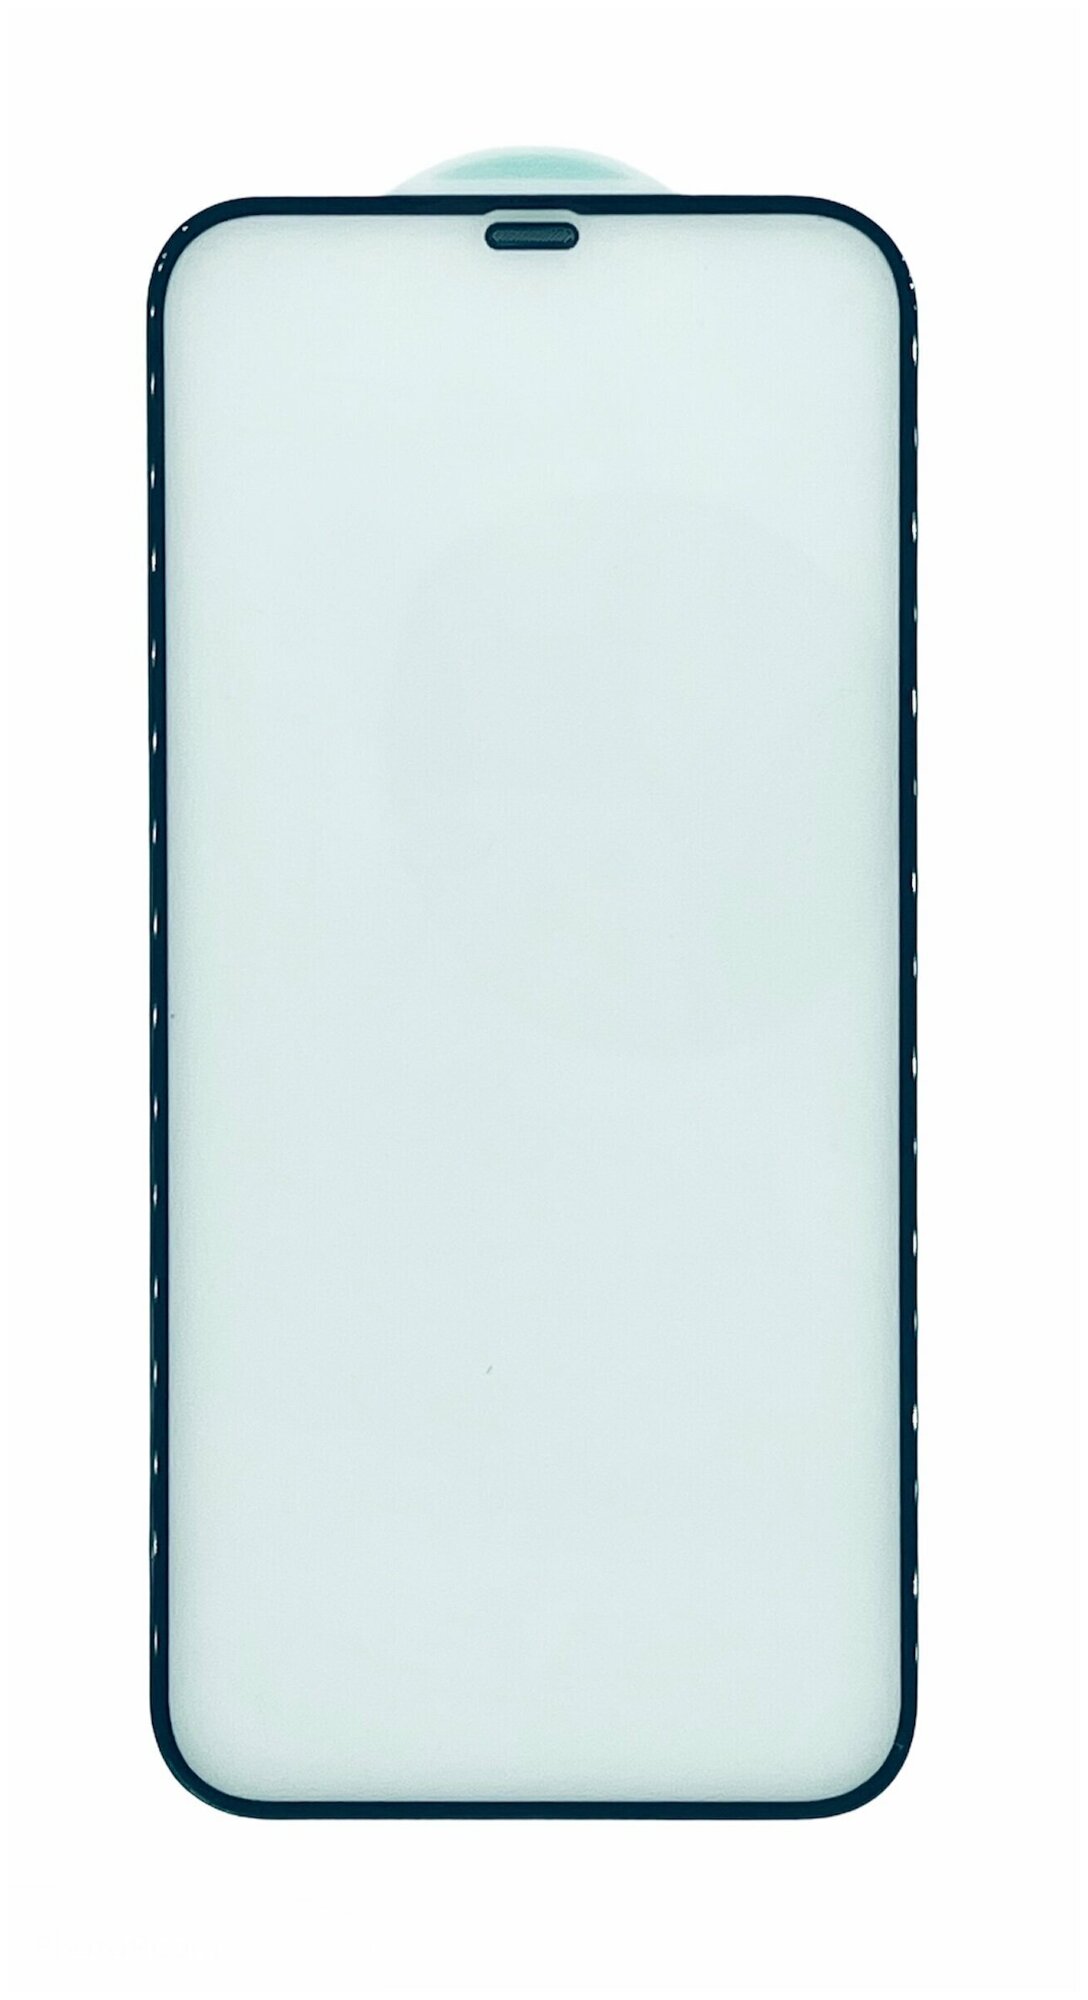 Защитное стекло Kuzoom с сеточкой динамика для iPhone X / iPhone XS / iPhone 11 pro премиум стекло - твердость 9H